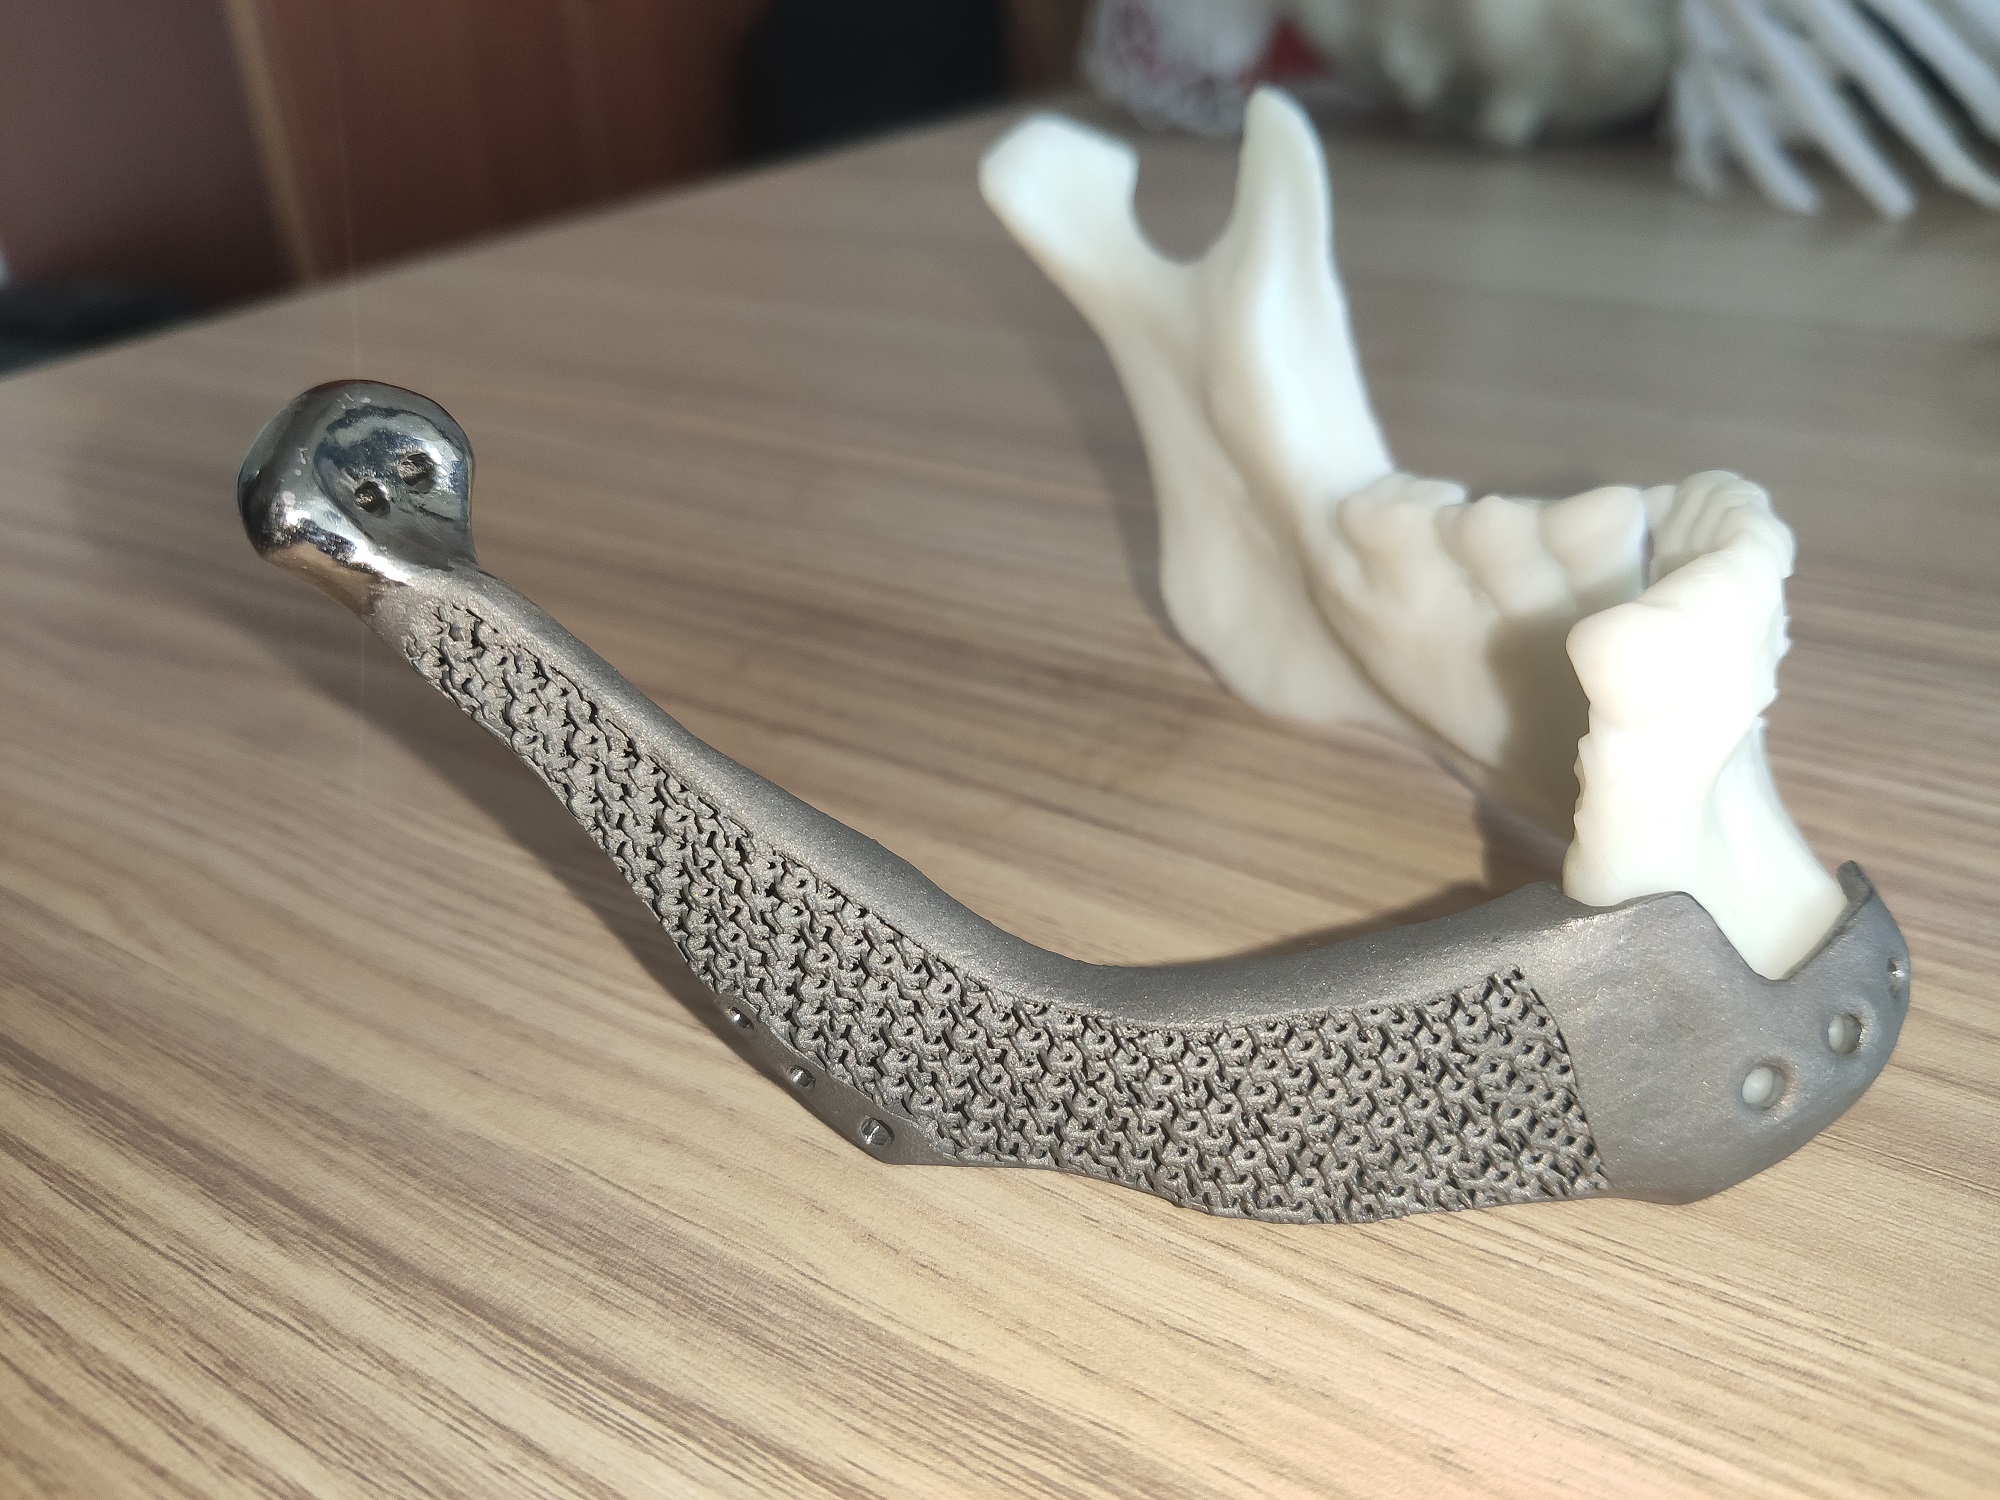 3D打印个性化钛合金骨修复假体的前驱探索与临床应用